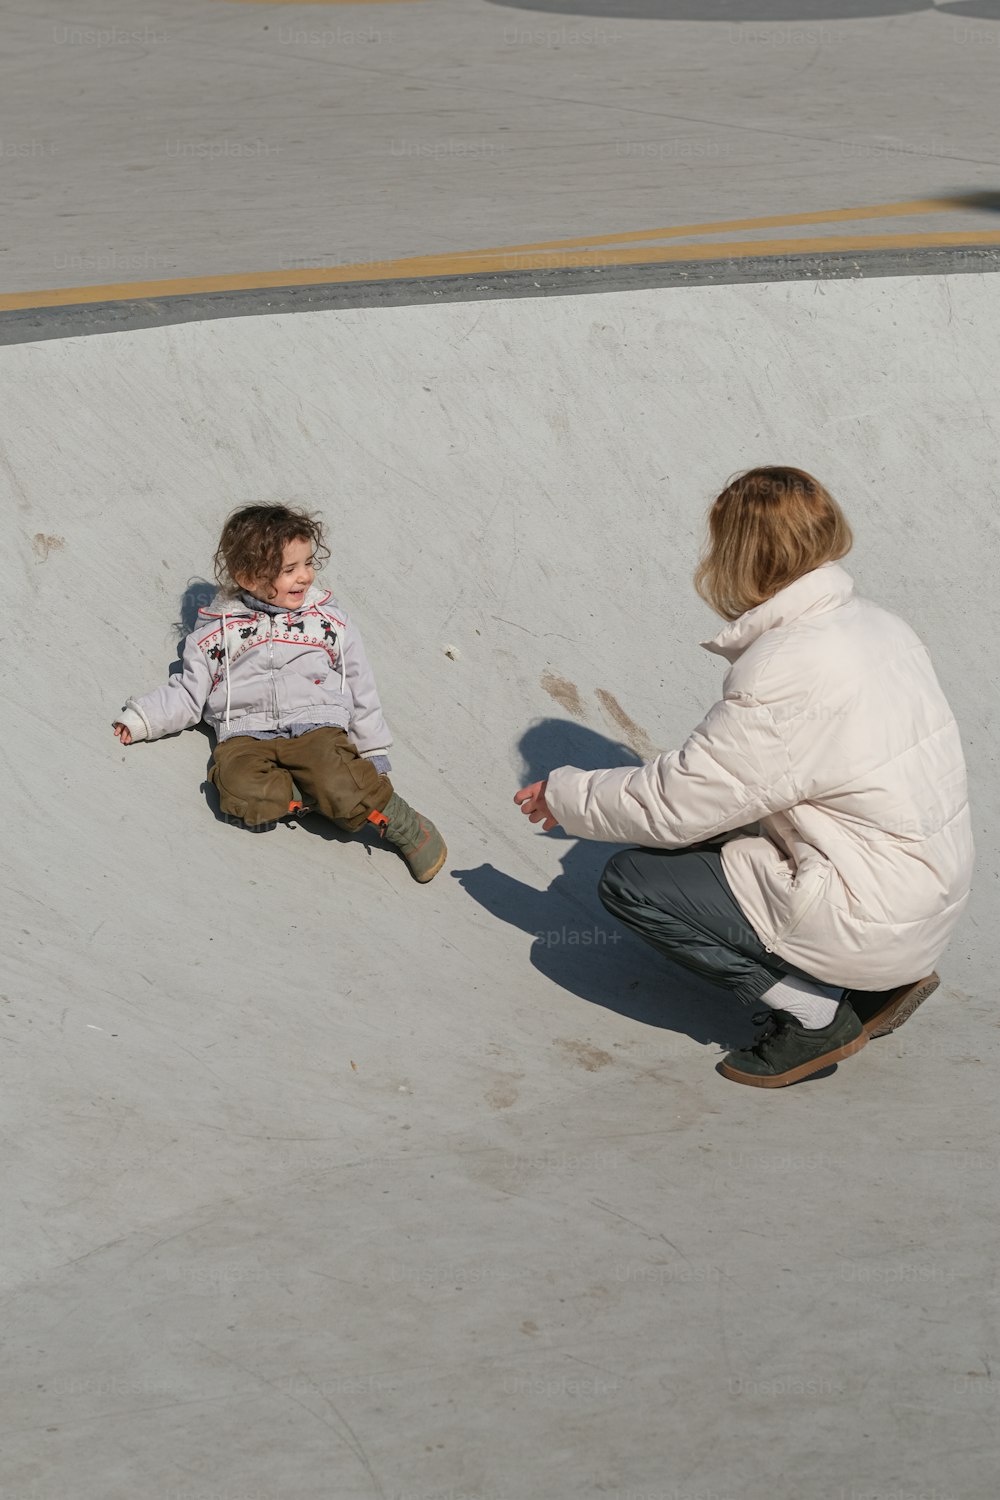 Una mujer arrodillada junto a un niño en una patineta